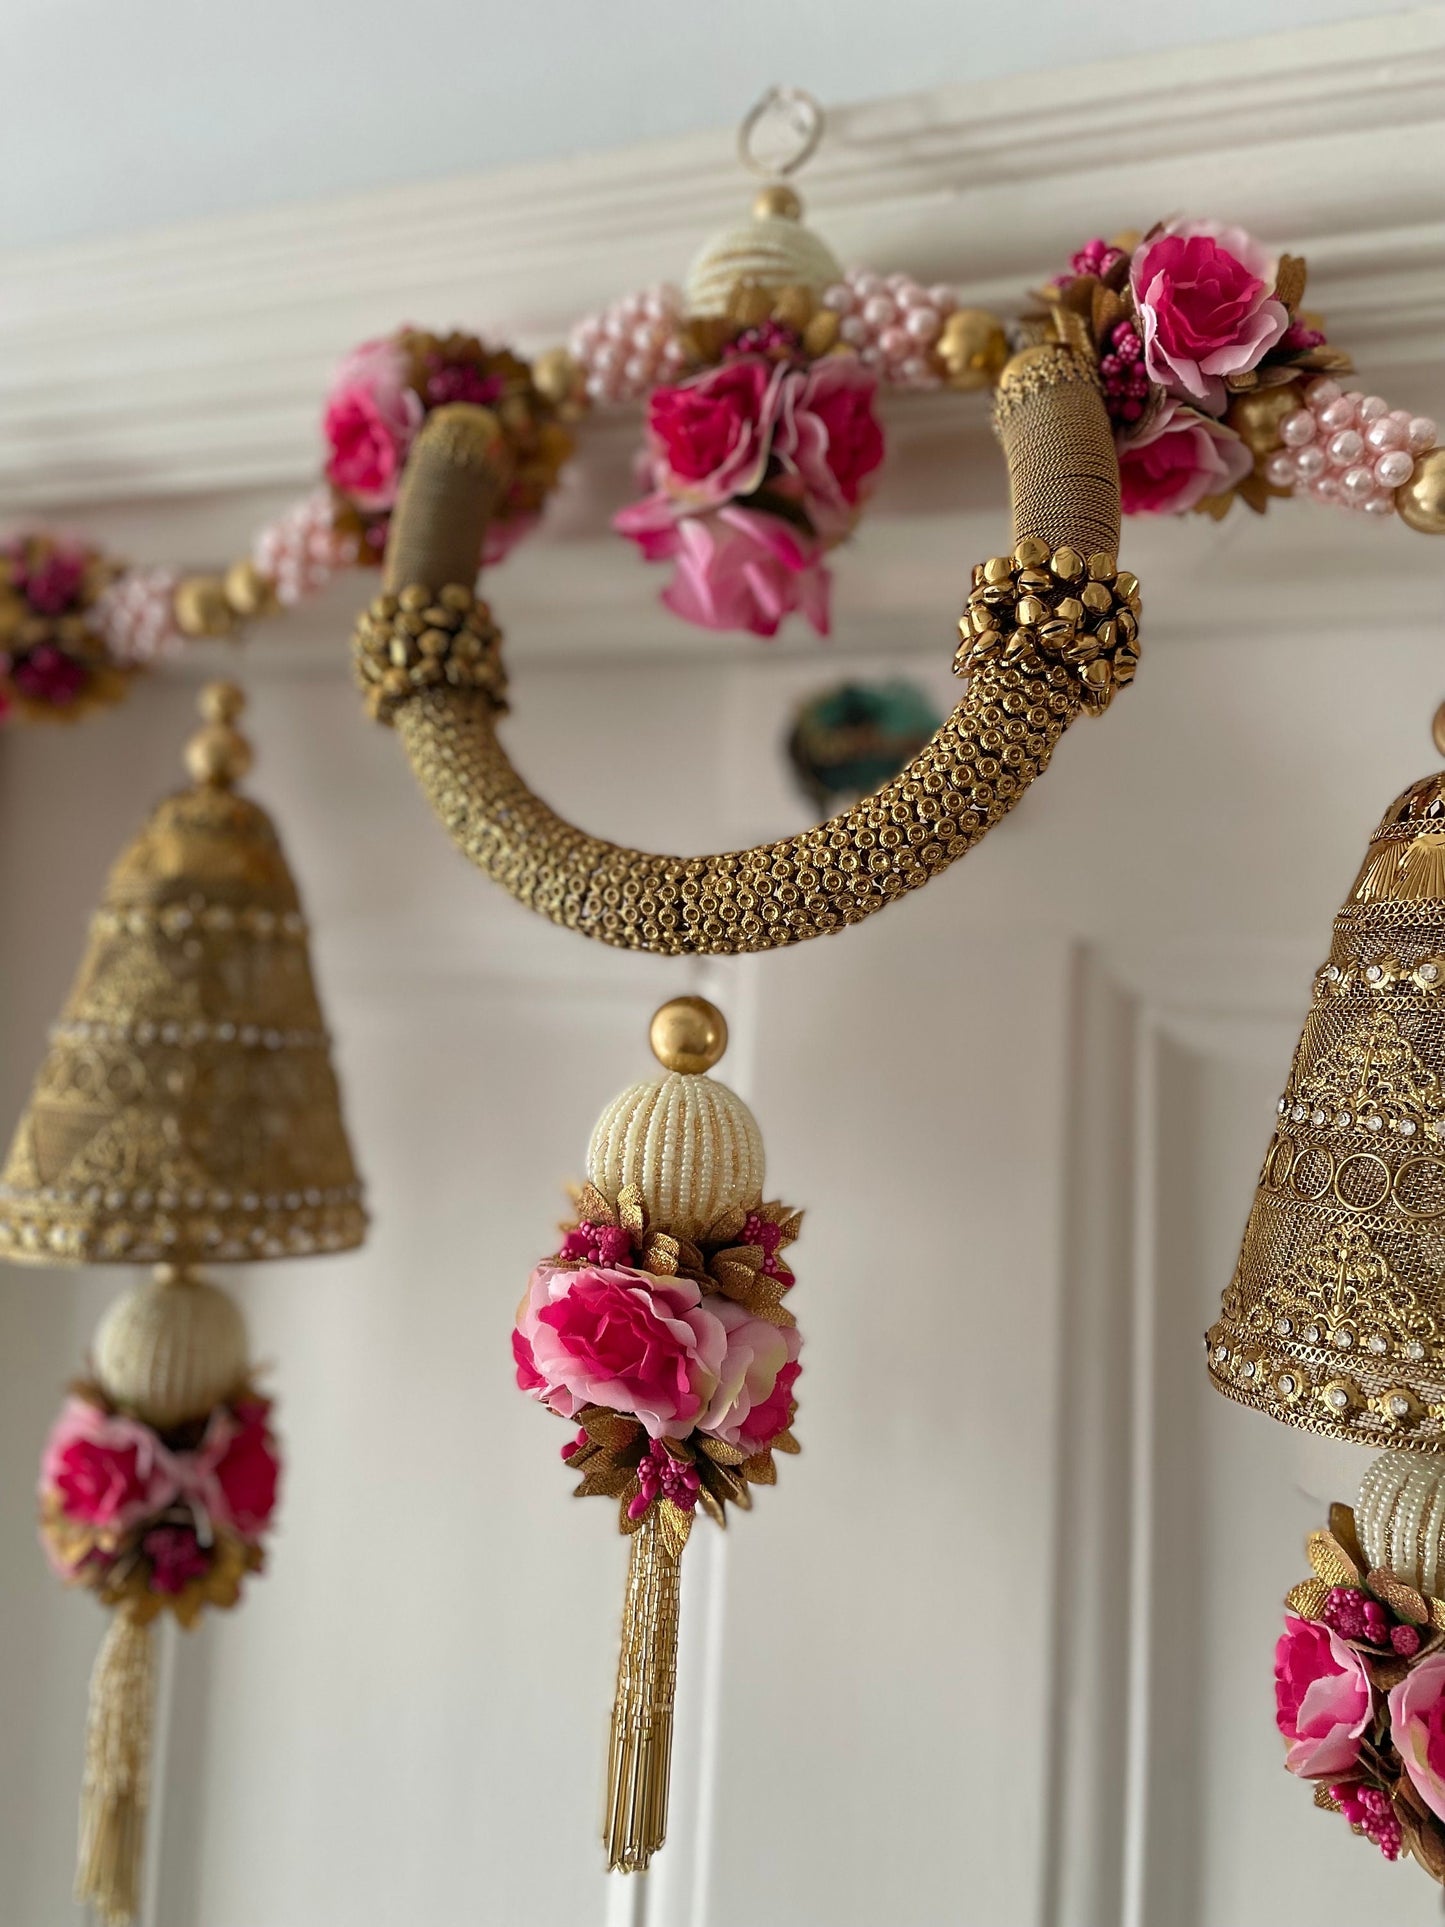 Meenakshi Toran Thiran Door Hanging Pearls Beads Jhumka Style Latkan with Side hanging Decorations for the Front Door Housewarming